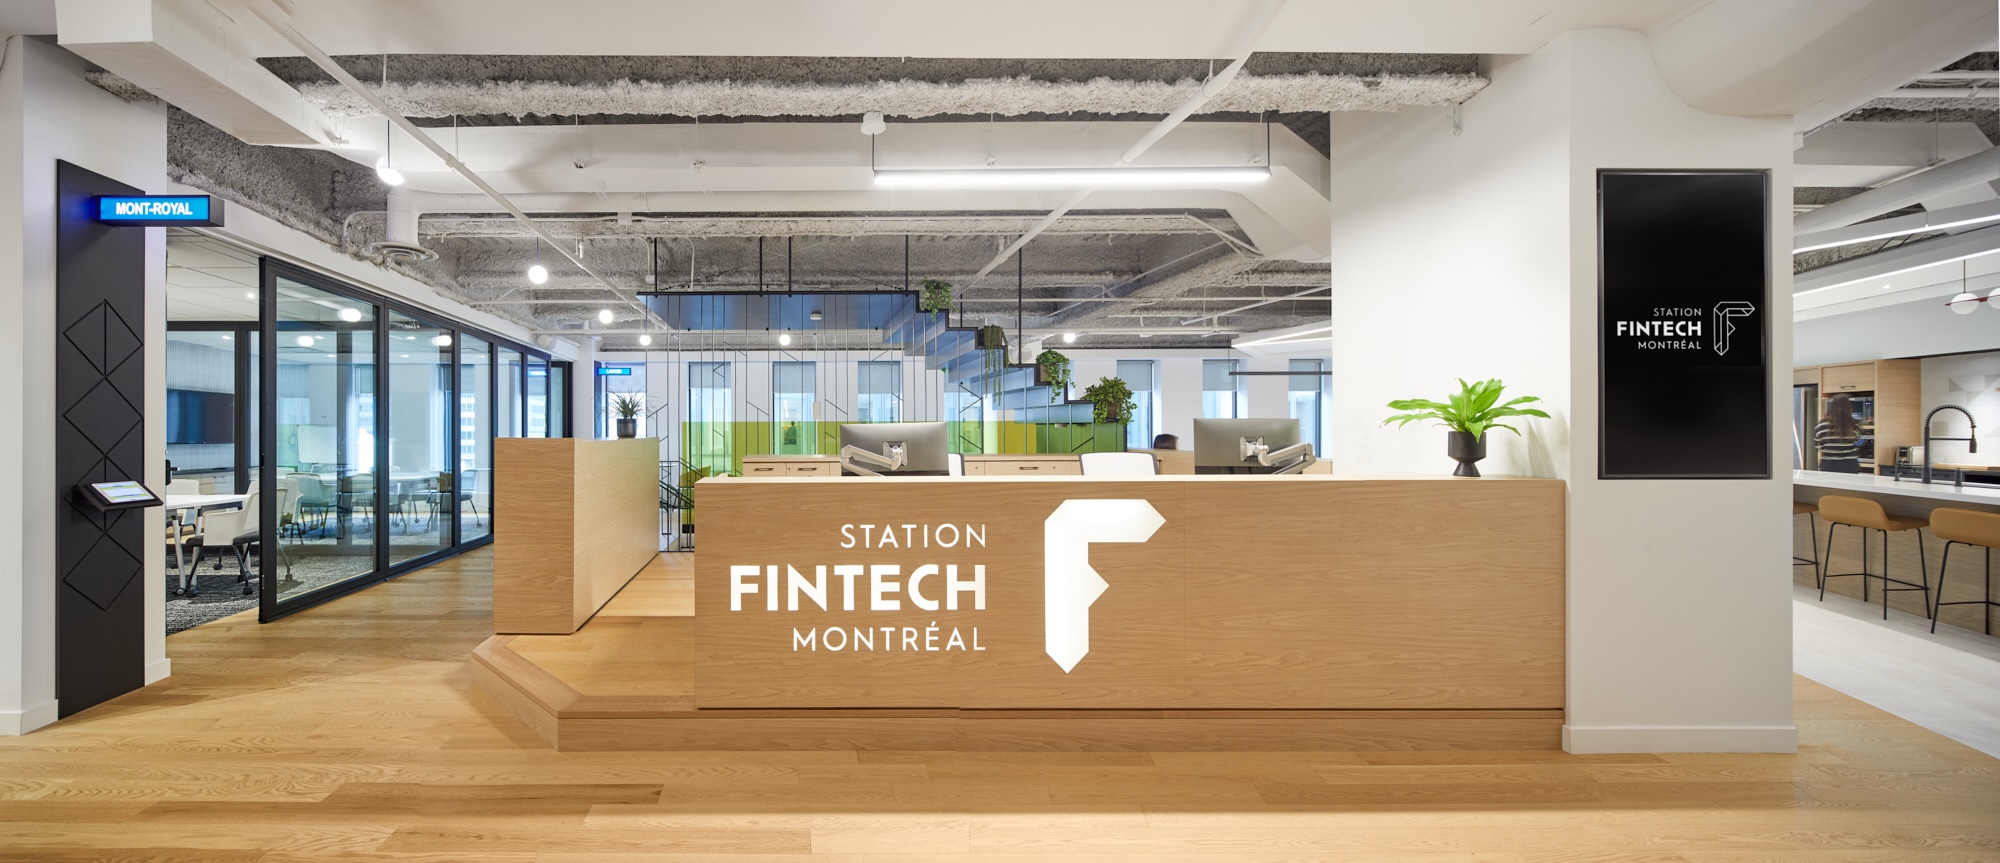 Projet de design corporatif - Réception de Station FinTech à Montréal par VAD Designers d'intérieur commercial.